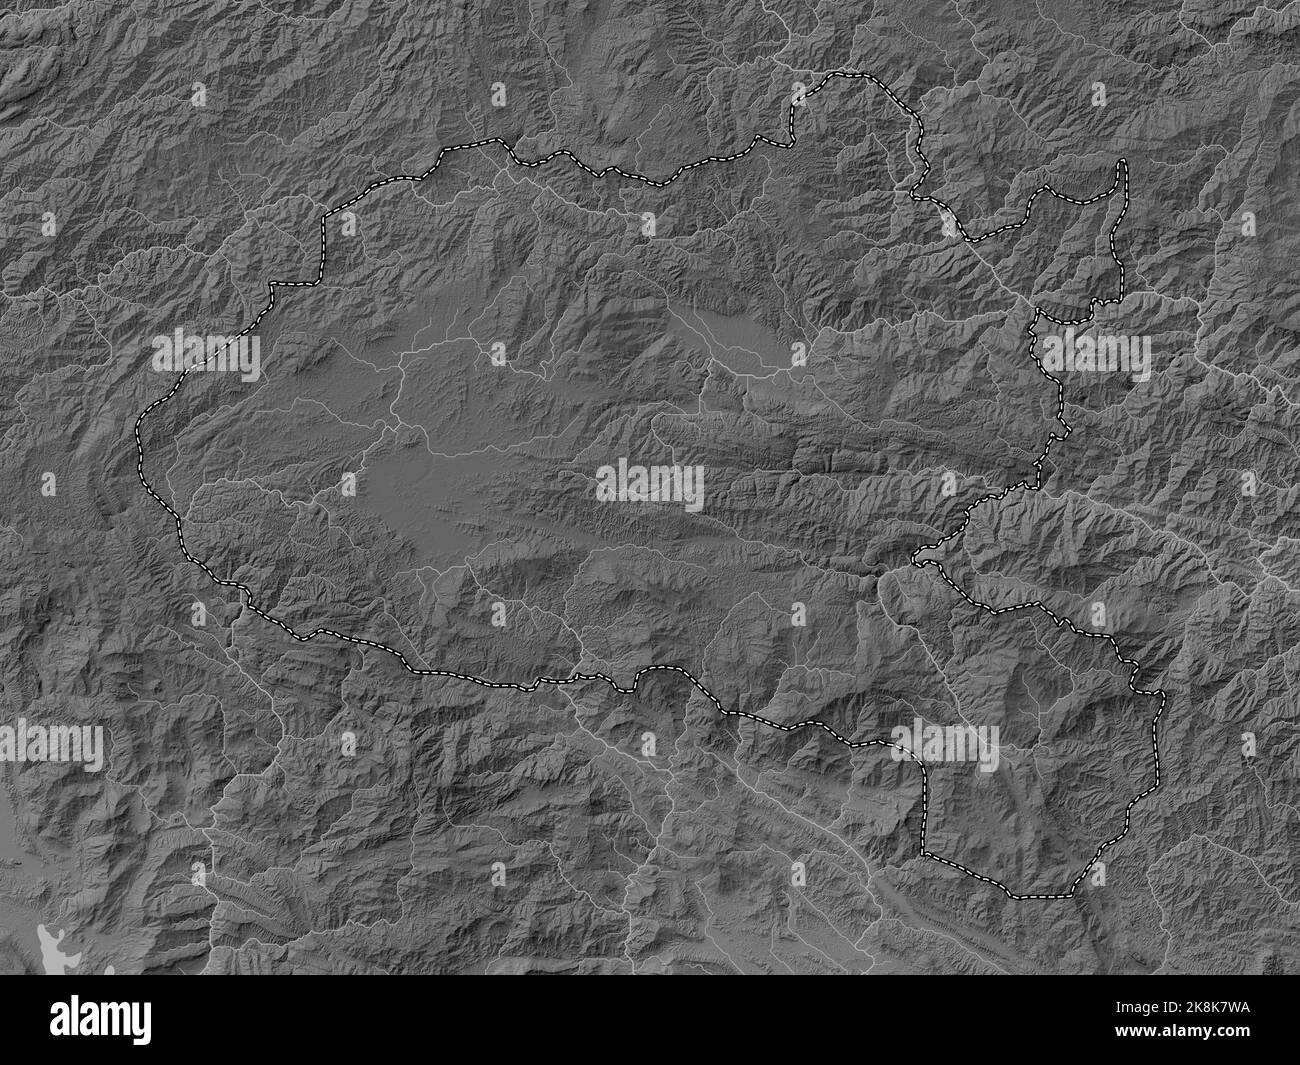 Xiangkhoang, province du Laos. Carte d'altitude en niveaux de gris avec lacs et rivières Banque D'Images